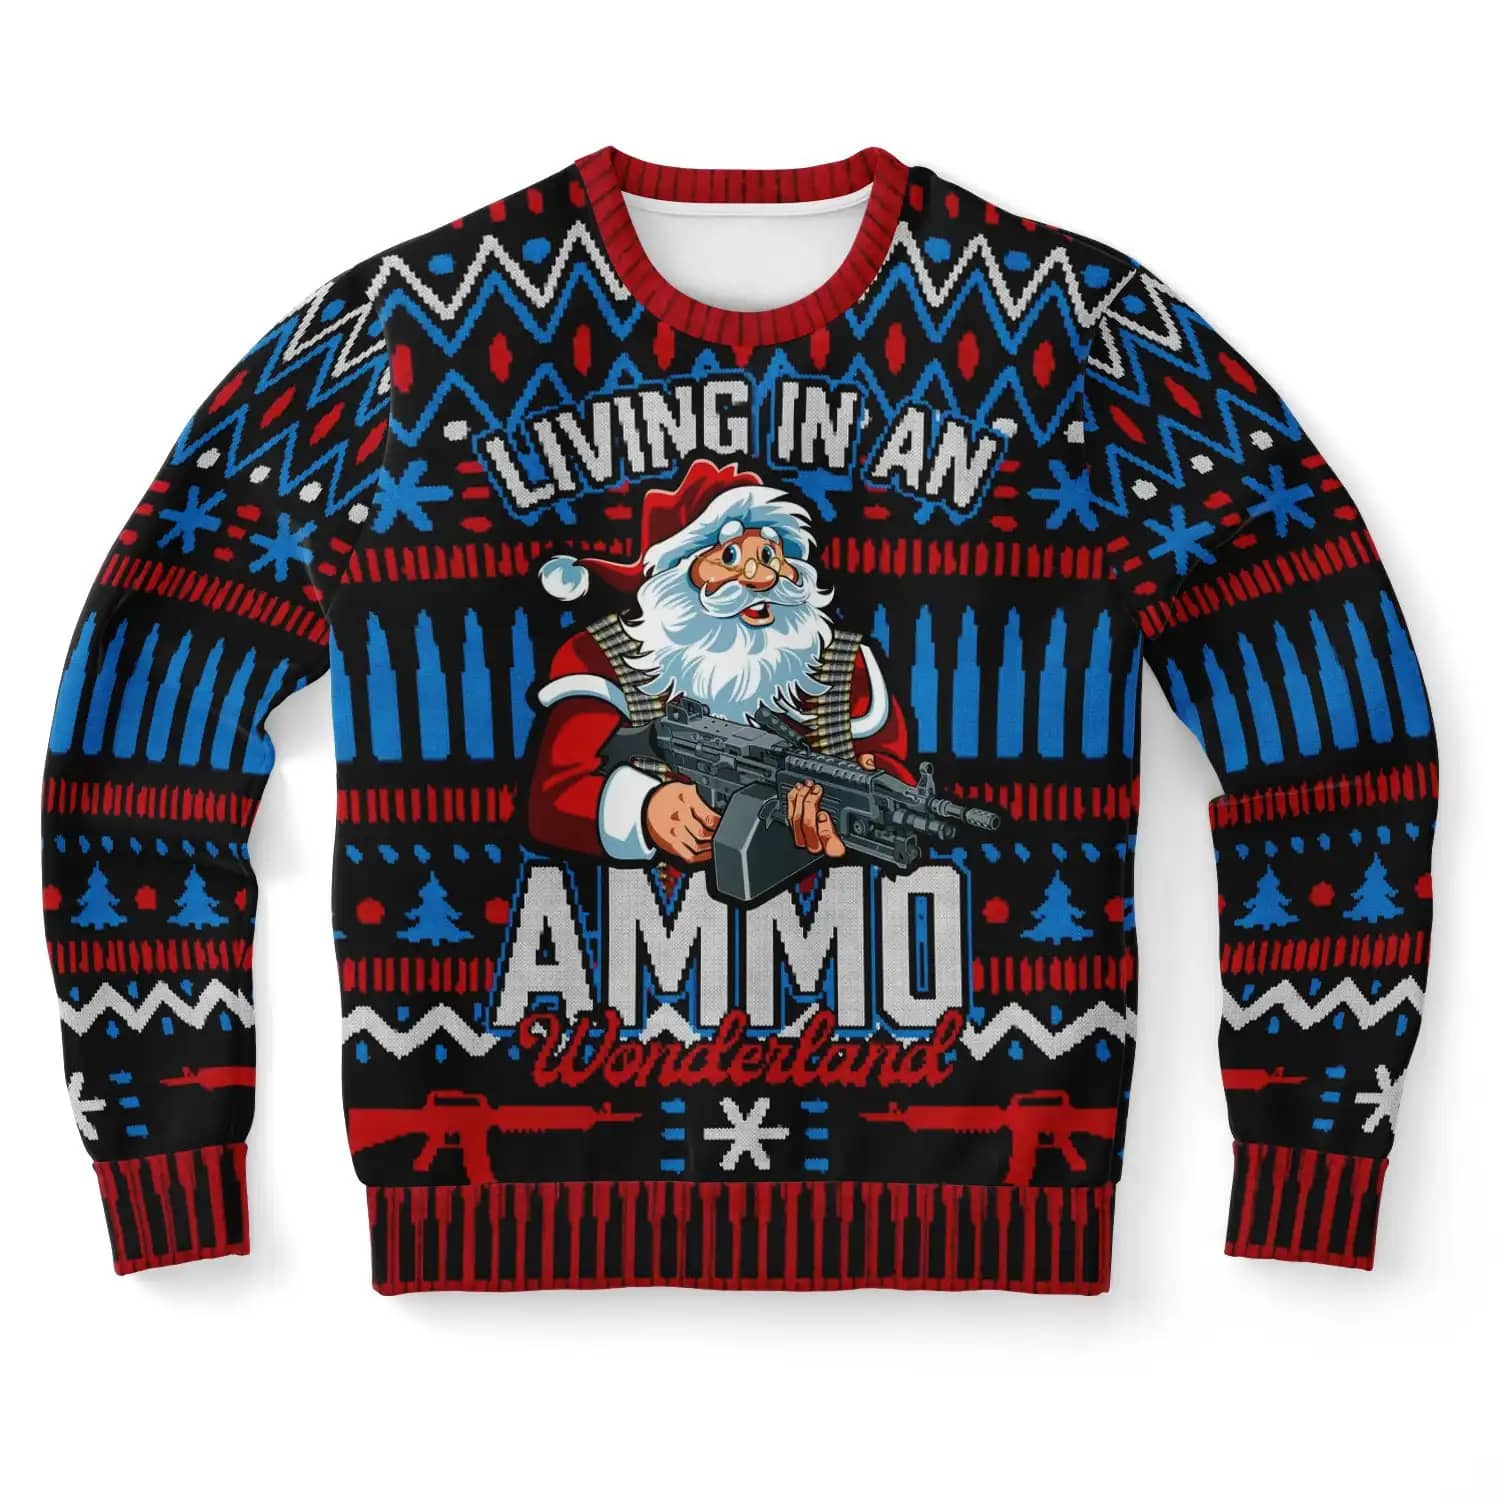 Ammo Wonderland Ugly Sweater